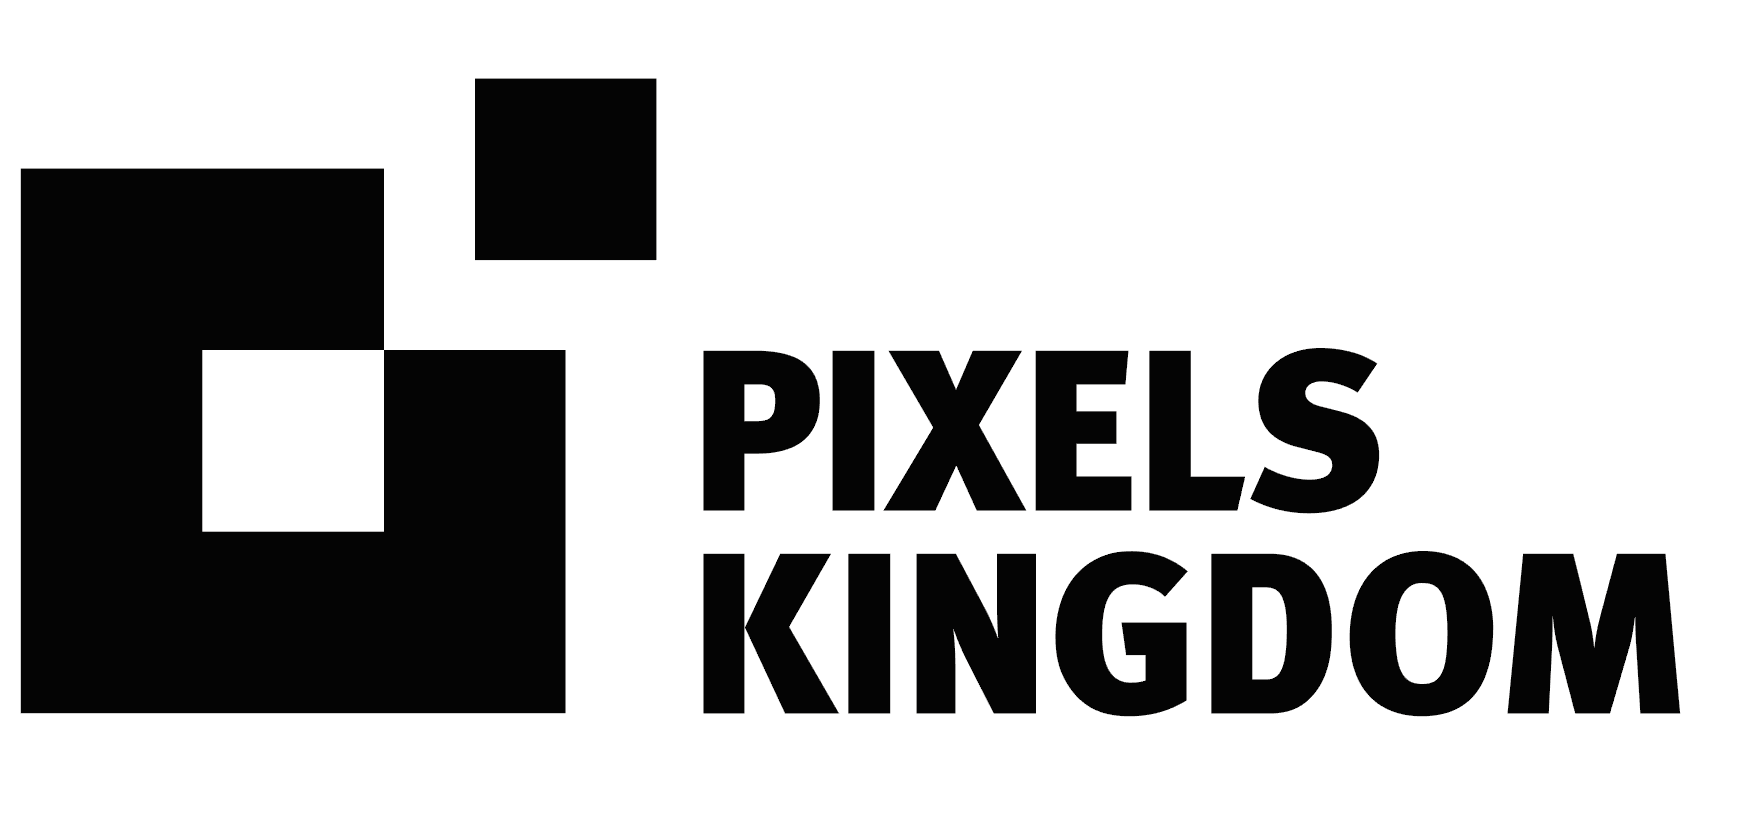 Smart-up Portrait: Pixels Kingdom